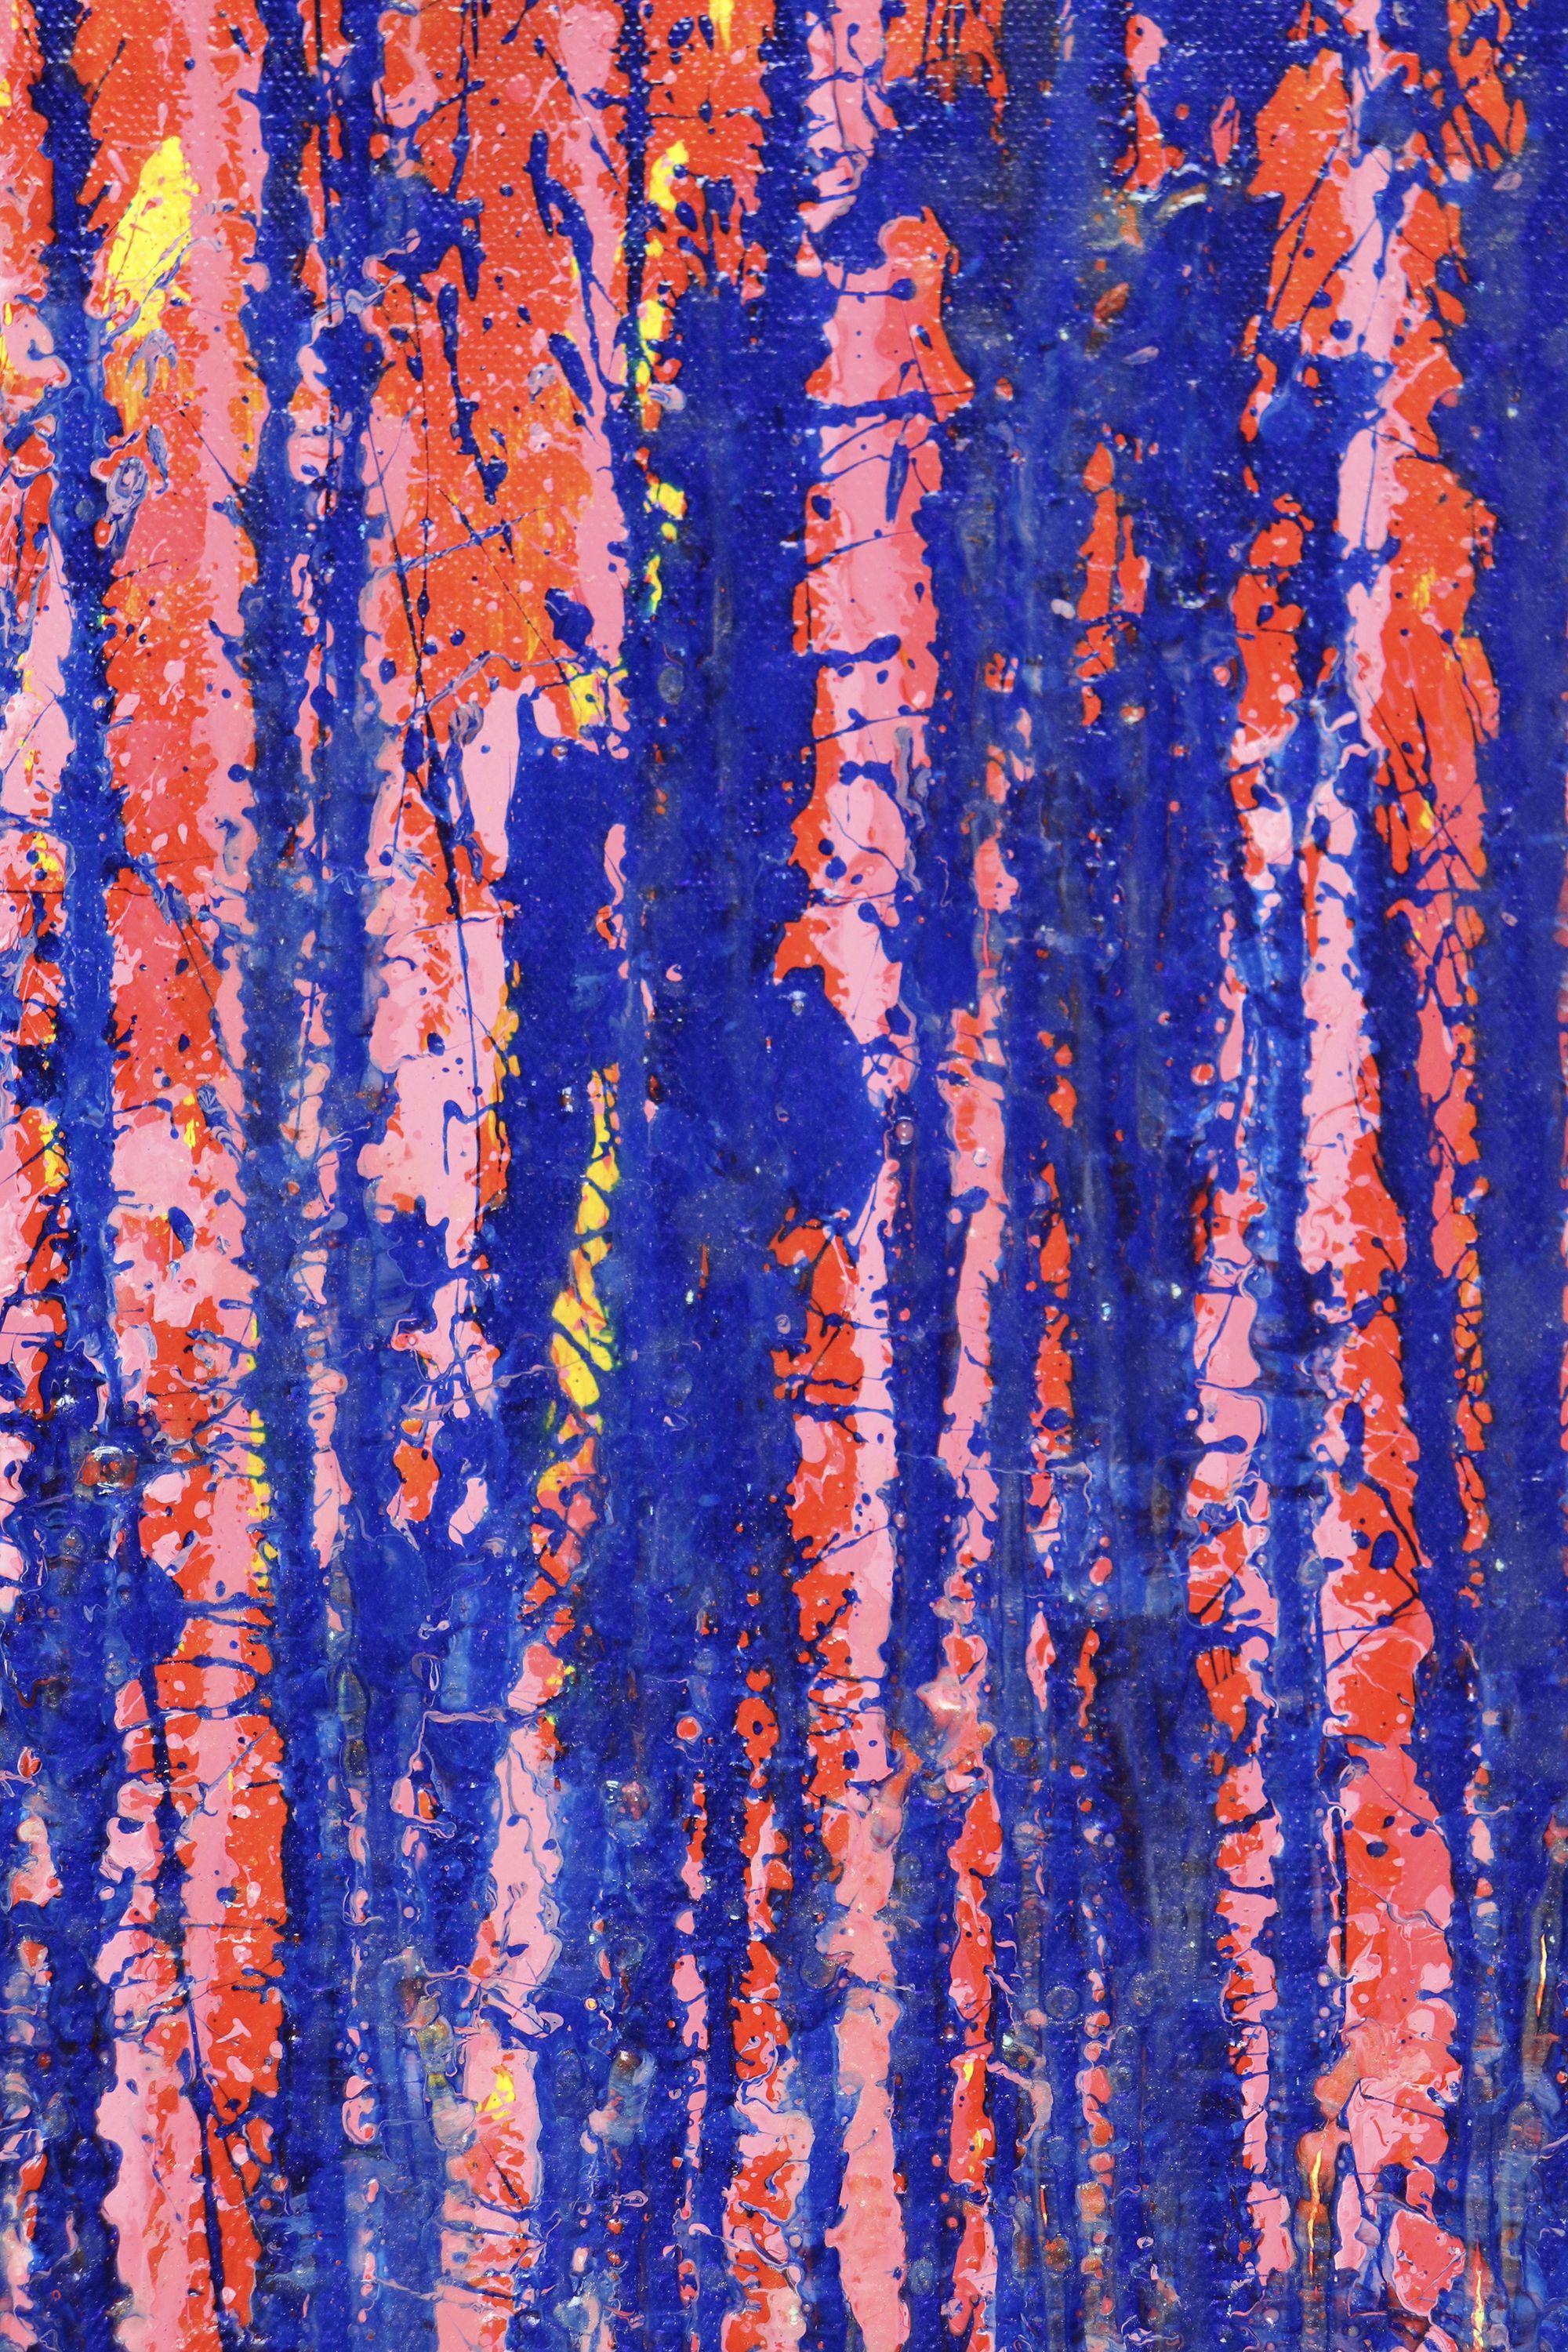 Lebendiges abstraktes Gemälde mit vielen Sprühstößen in leuchtendem Metallic-Blau, Orange, Grün und irisierendem, klarem Gold auf leuchtend orangem Hintergrund. Vorne signiert.    Ich lege ein Echtheitszertifikat bei, in dem die Materialien sowie